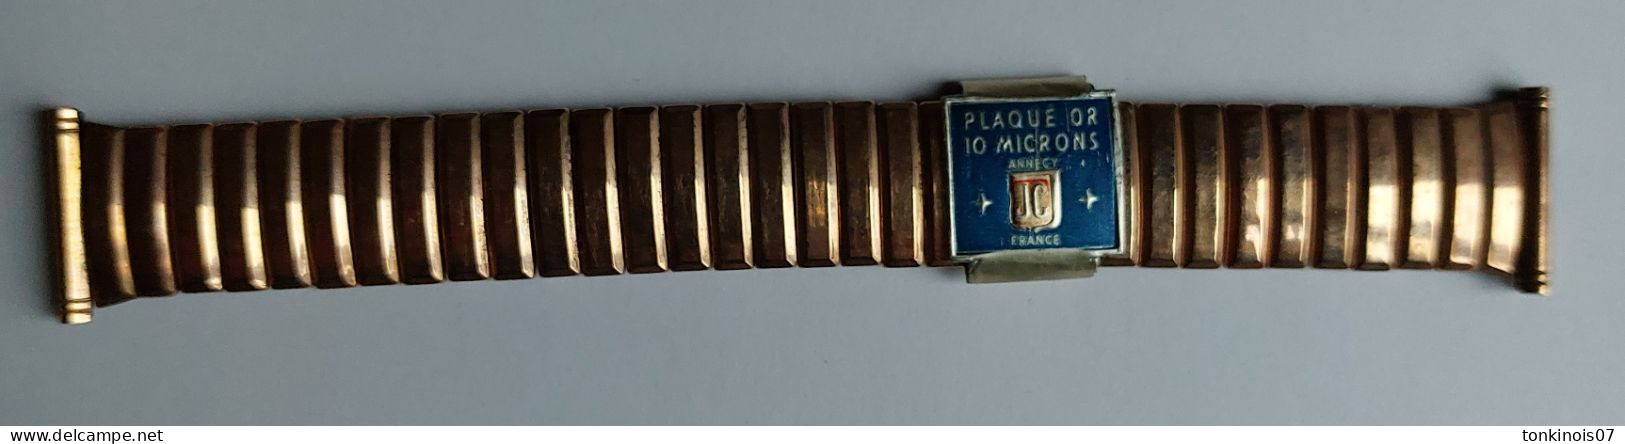 Bracelet De Montre Années 1930/1950 En Métal Plaqué Or 10 Microns Annecy JC France - Watches: Old